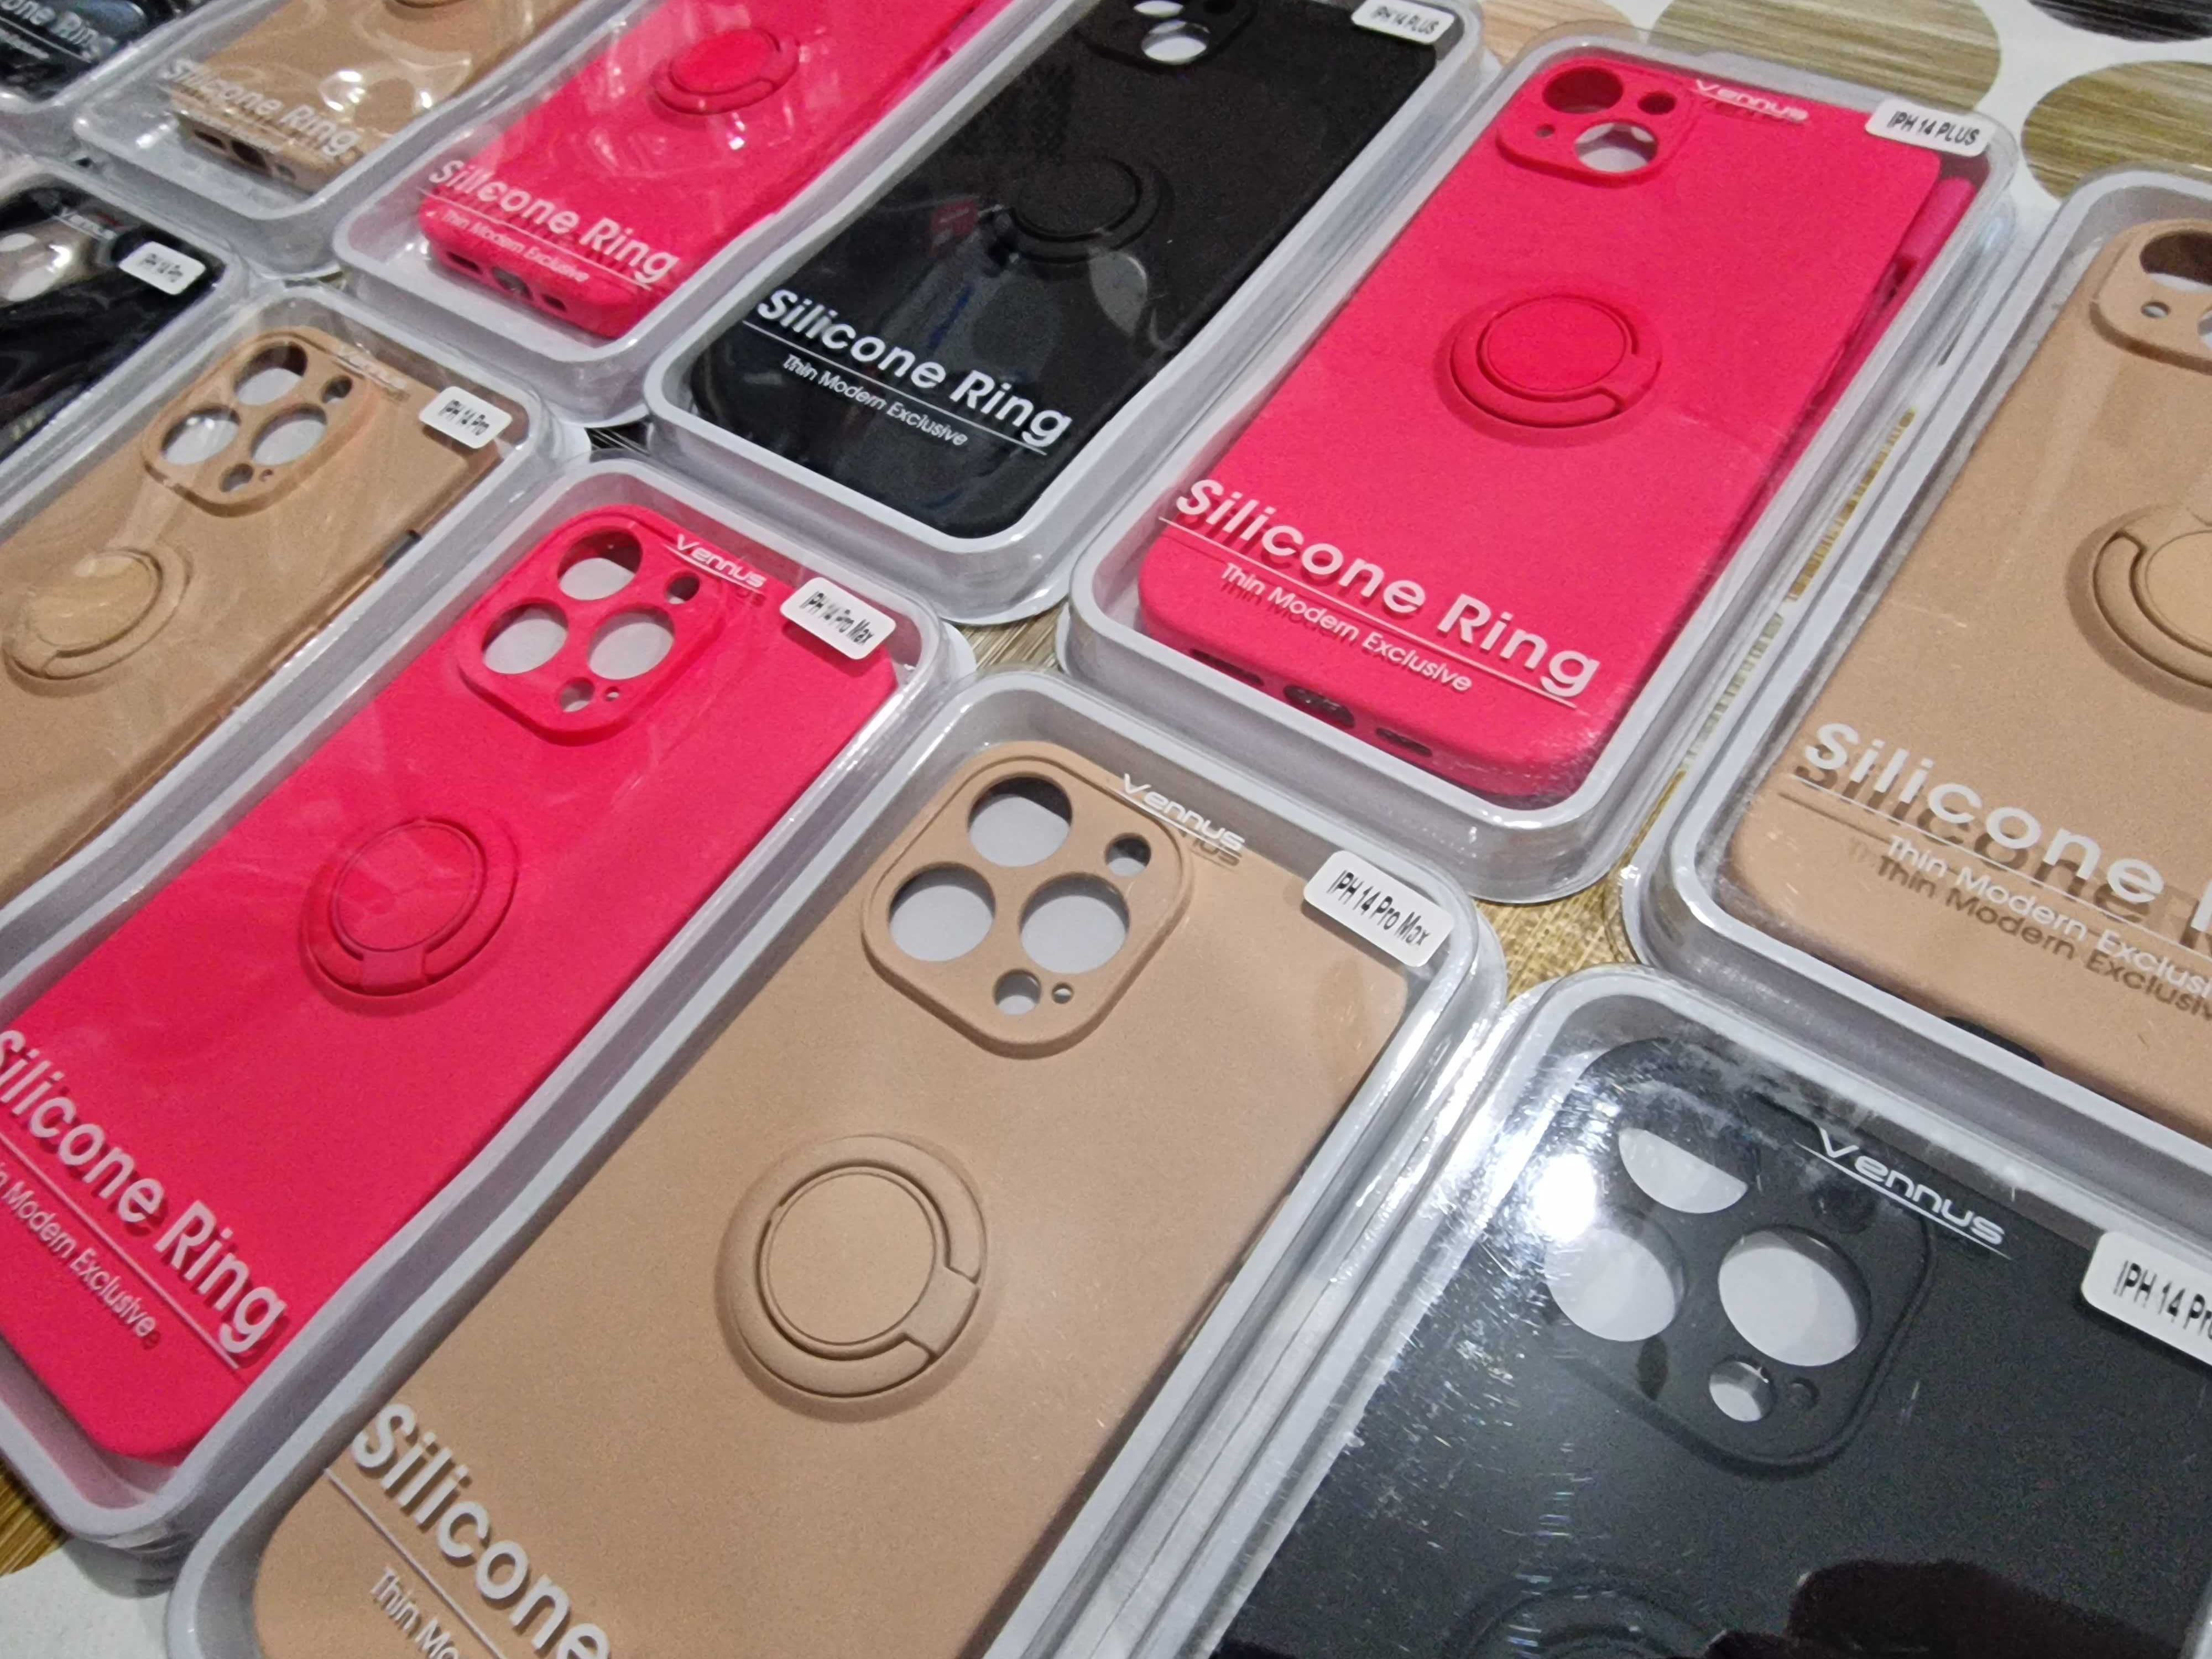 iphone 14 ,iPhone 14+ ,iPhone 14 pro , iPhone 14 pro Max  Ring Case